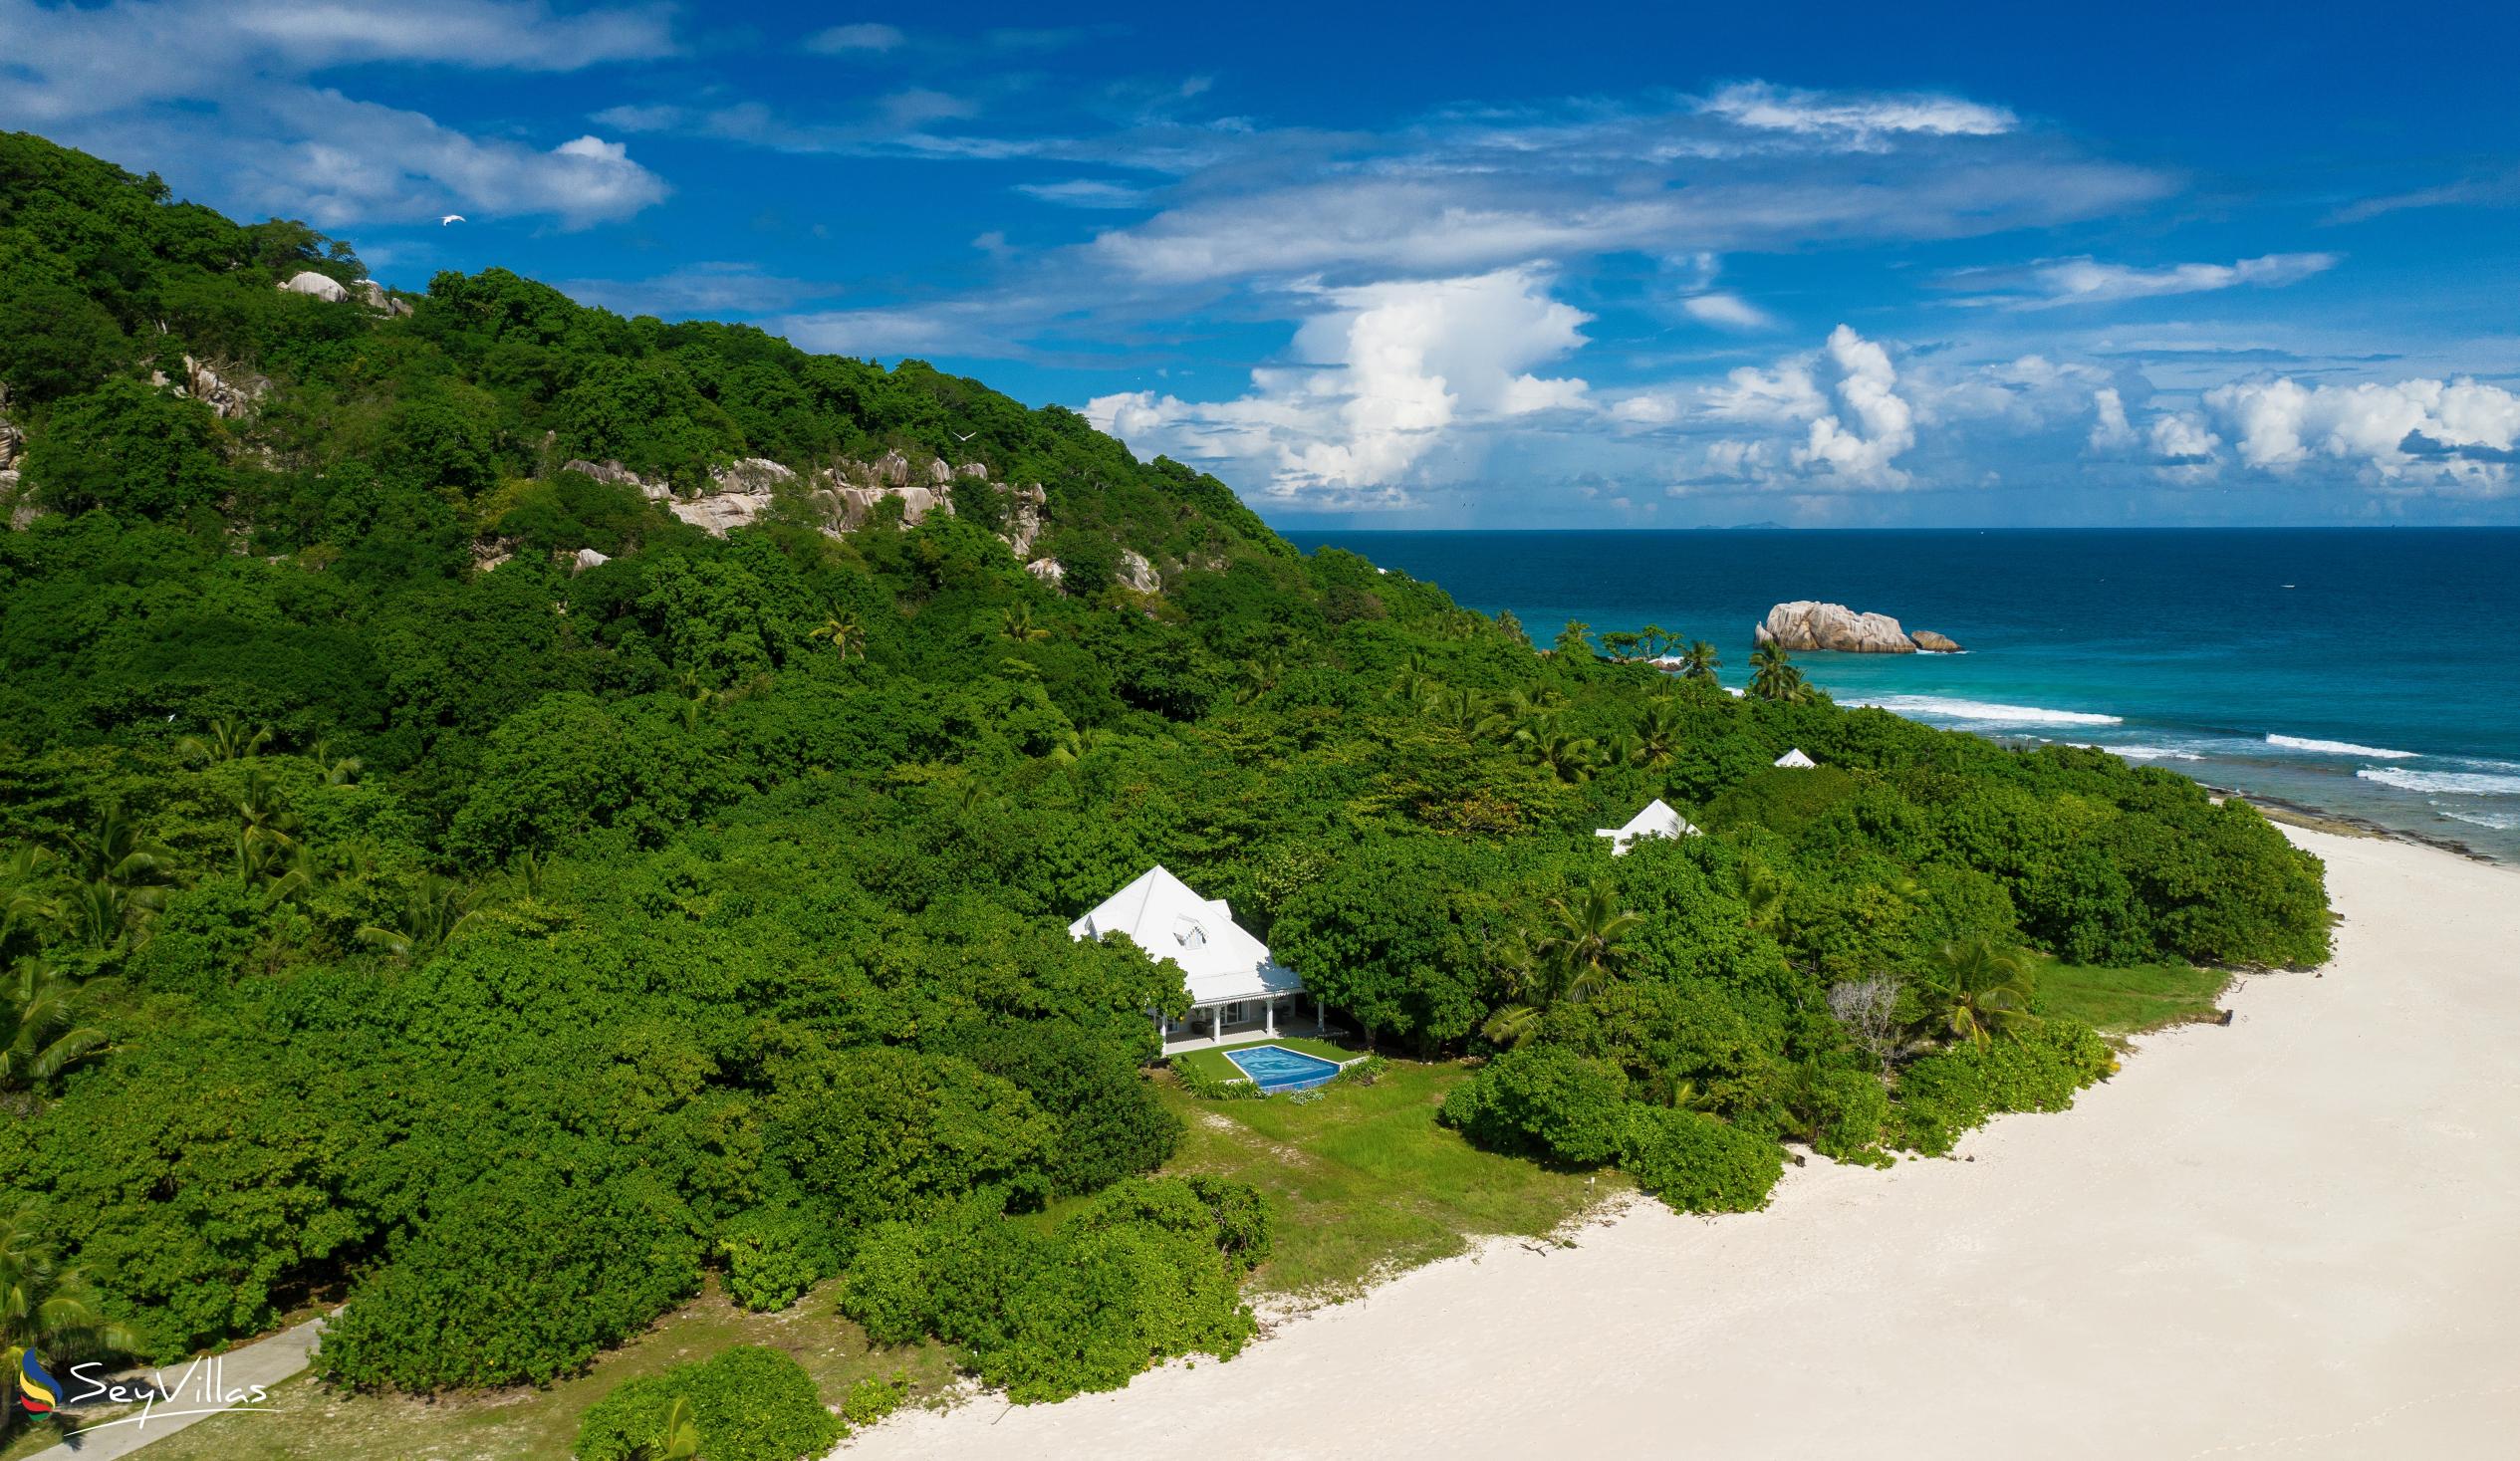 Photo 70: Cousine Island Seychelles - Luxury Villa - Cousine Island (Seychelles)